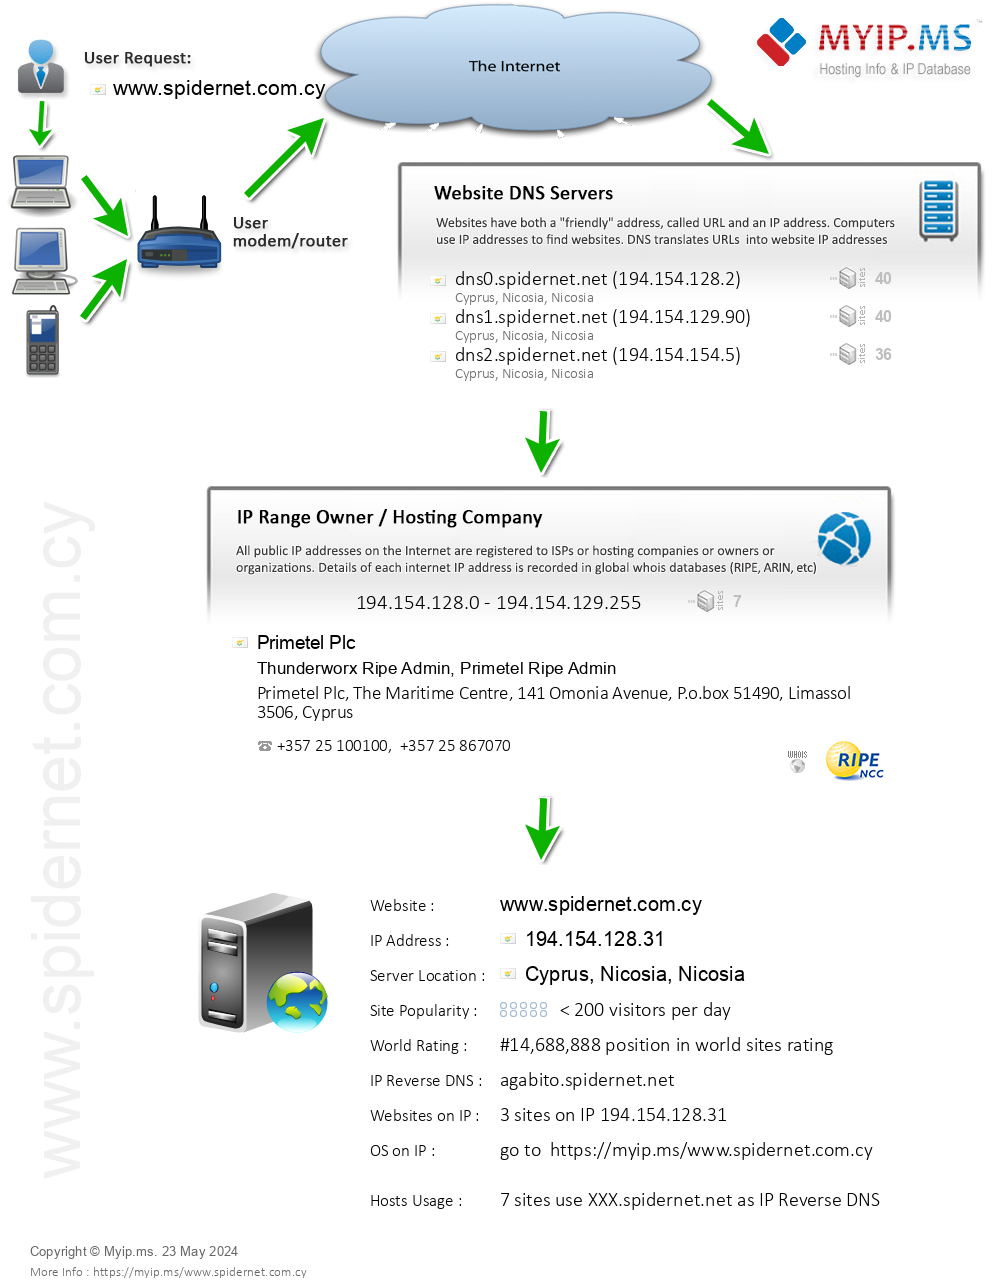 Spidernet.com.cy - Website Hosting Visual IP Diagram